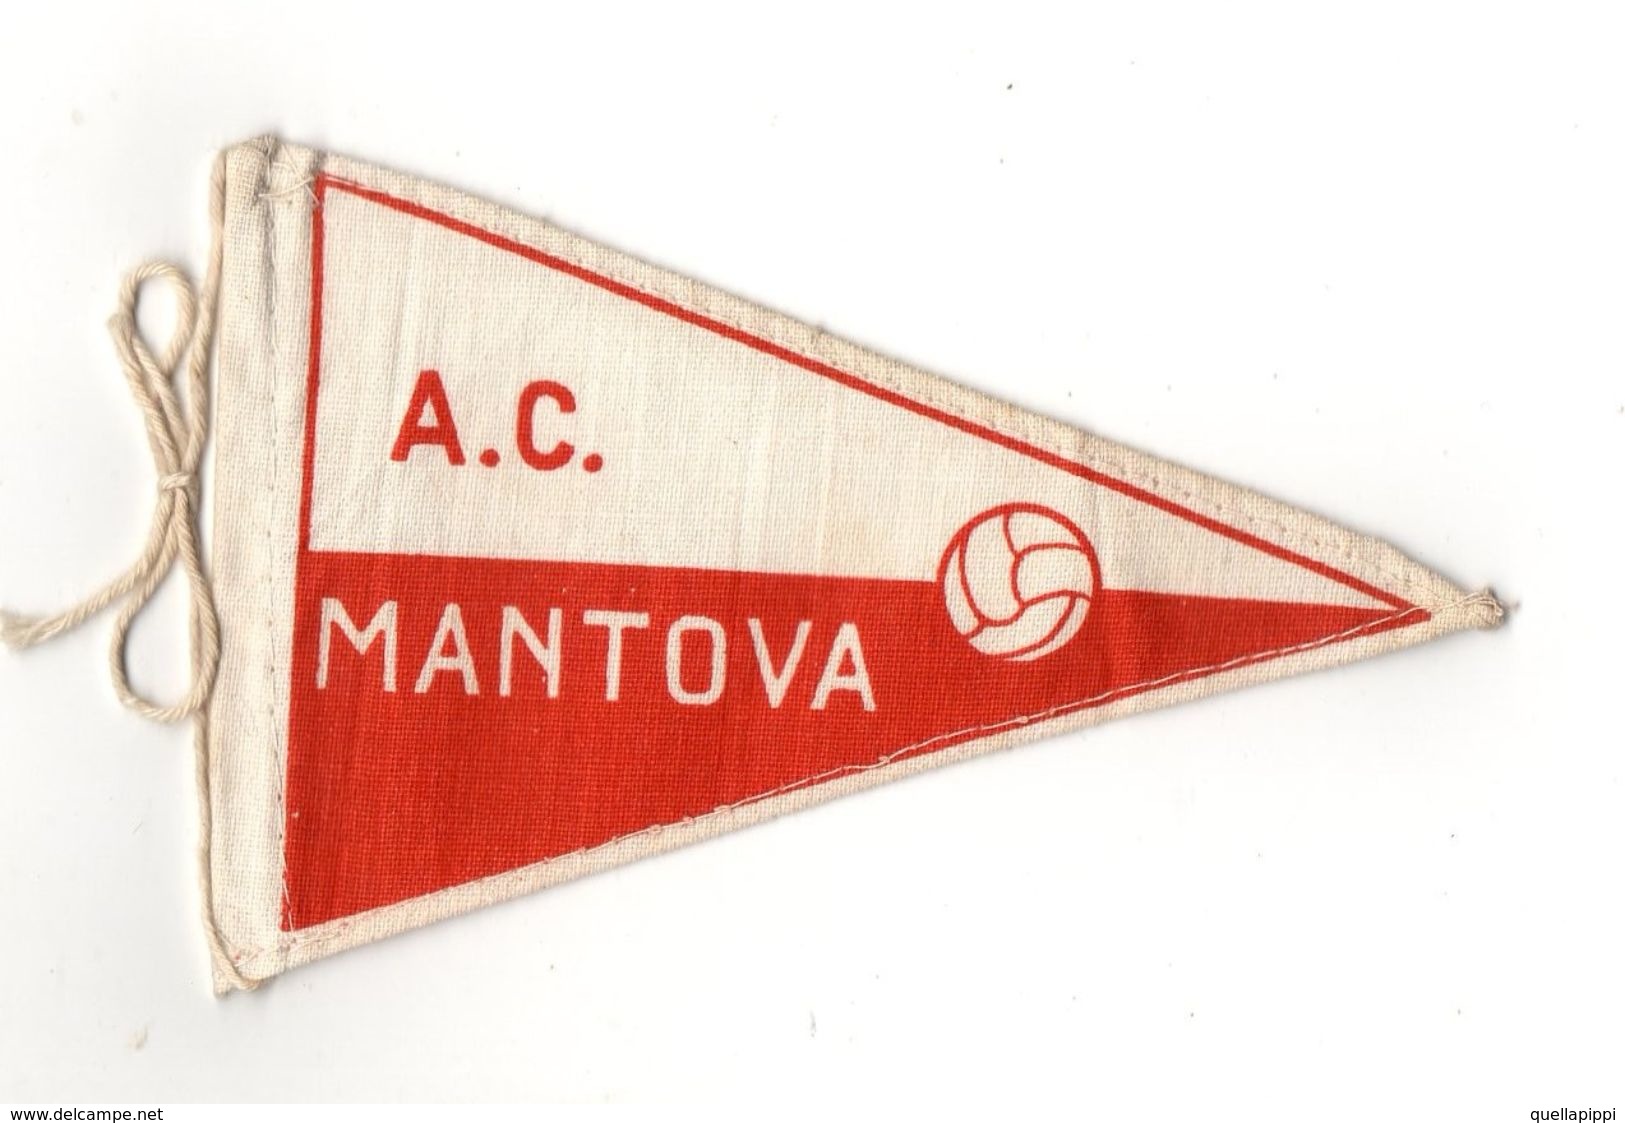 07129 "MANTOVA A.C. FOOTBALL CLUB - BANDIERINA BIFRONTE IN STOFFA CON LEGACCI" ANNI '70 ORIG. - Uniformes Recordatorios & Misc